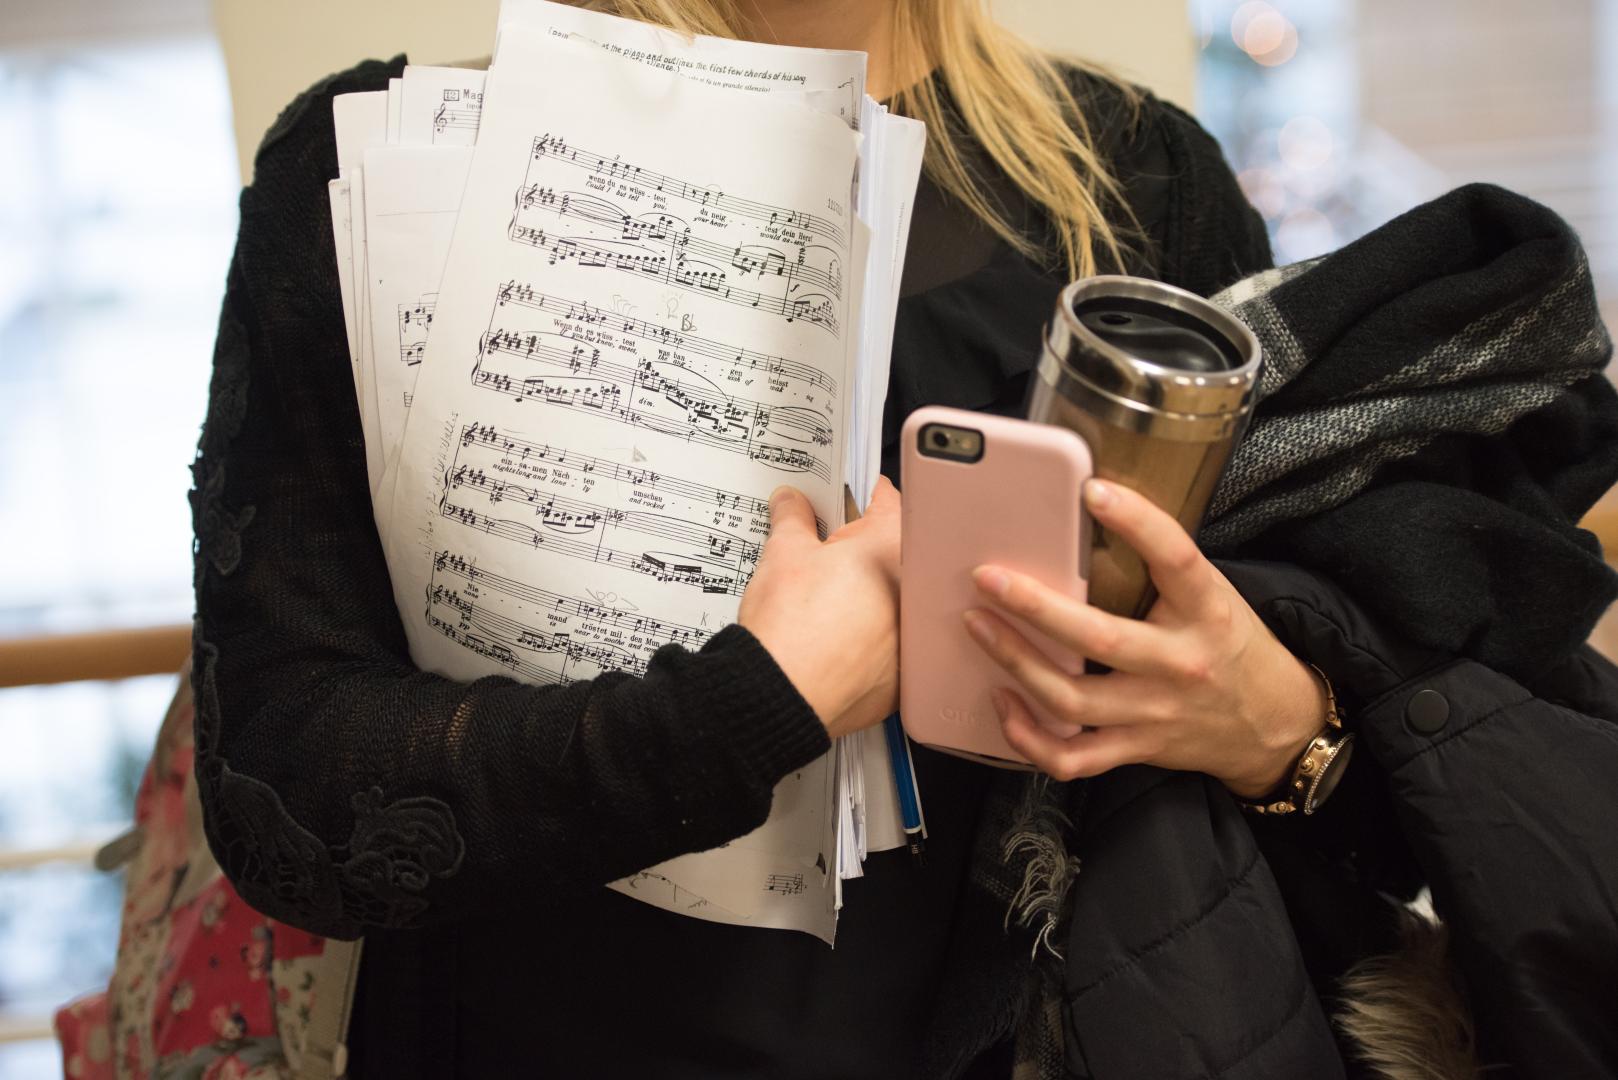 Eine Studentin hält Noten, einen Kaffeebecher, eine Jacke und ihr Smartphone in der Hand.